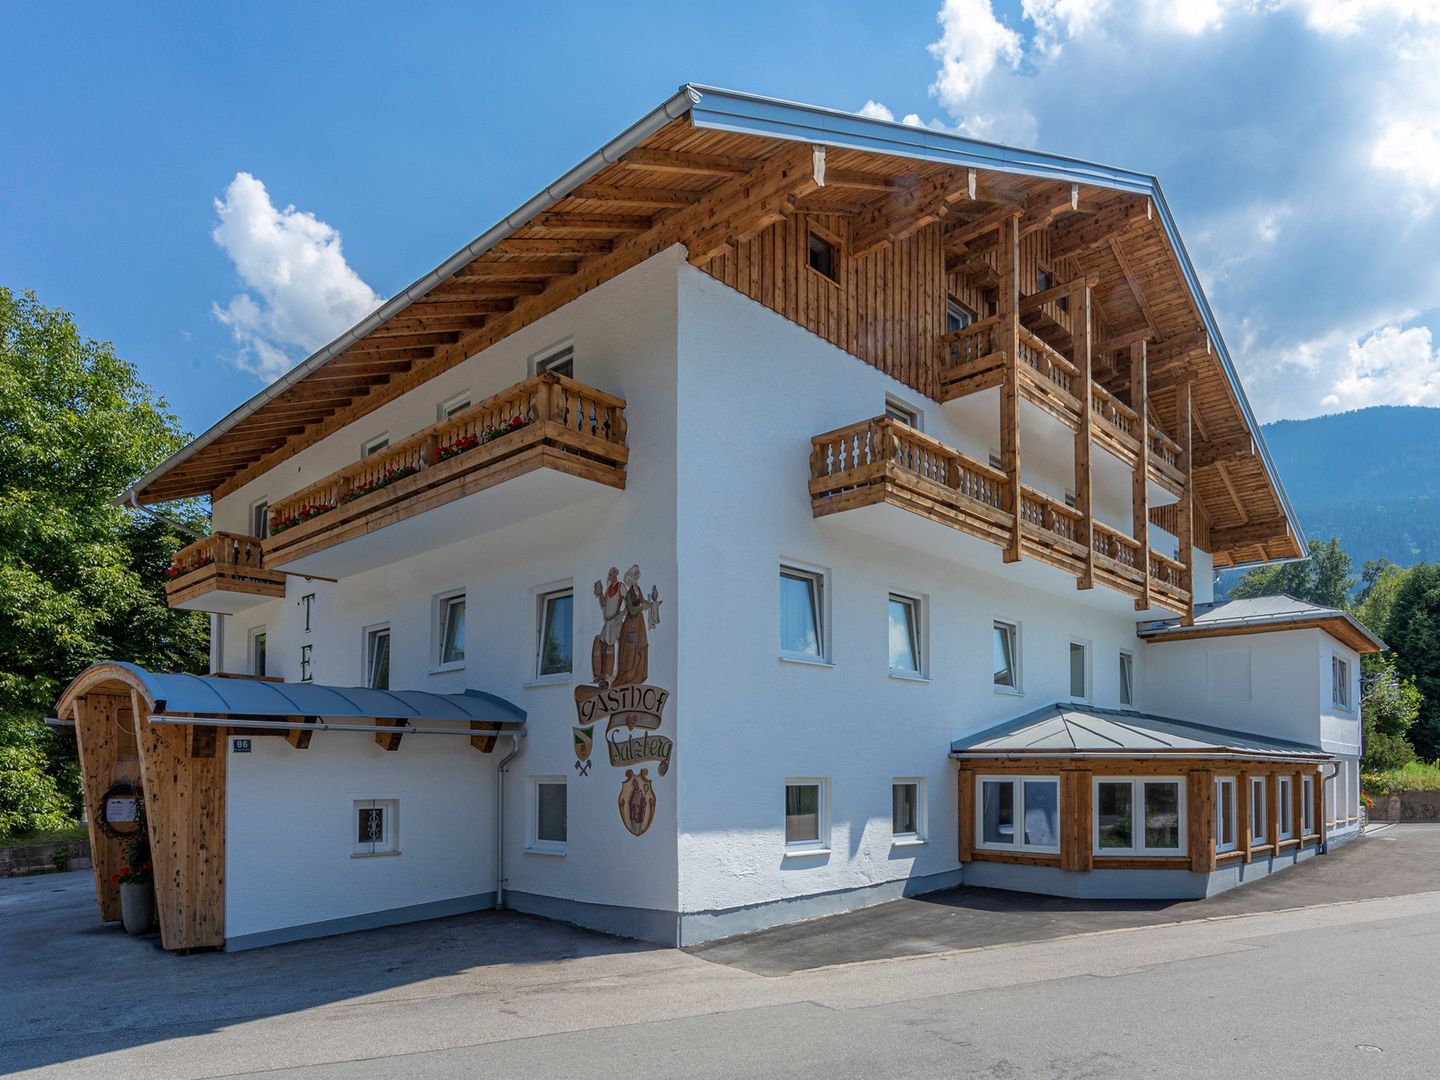 Home-Hotel Salzberg in Berchtesgaden, Home-Hotel Salzberg / Deutschland